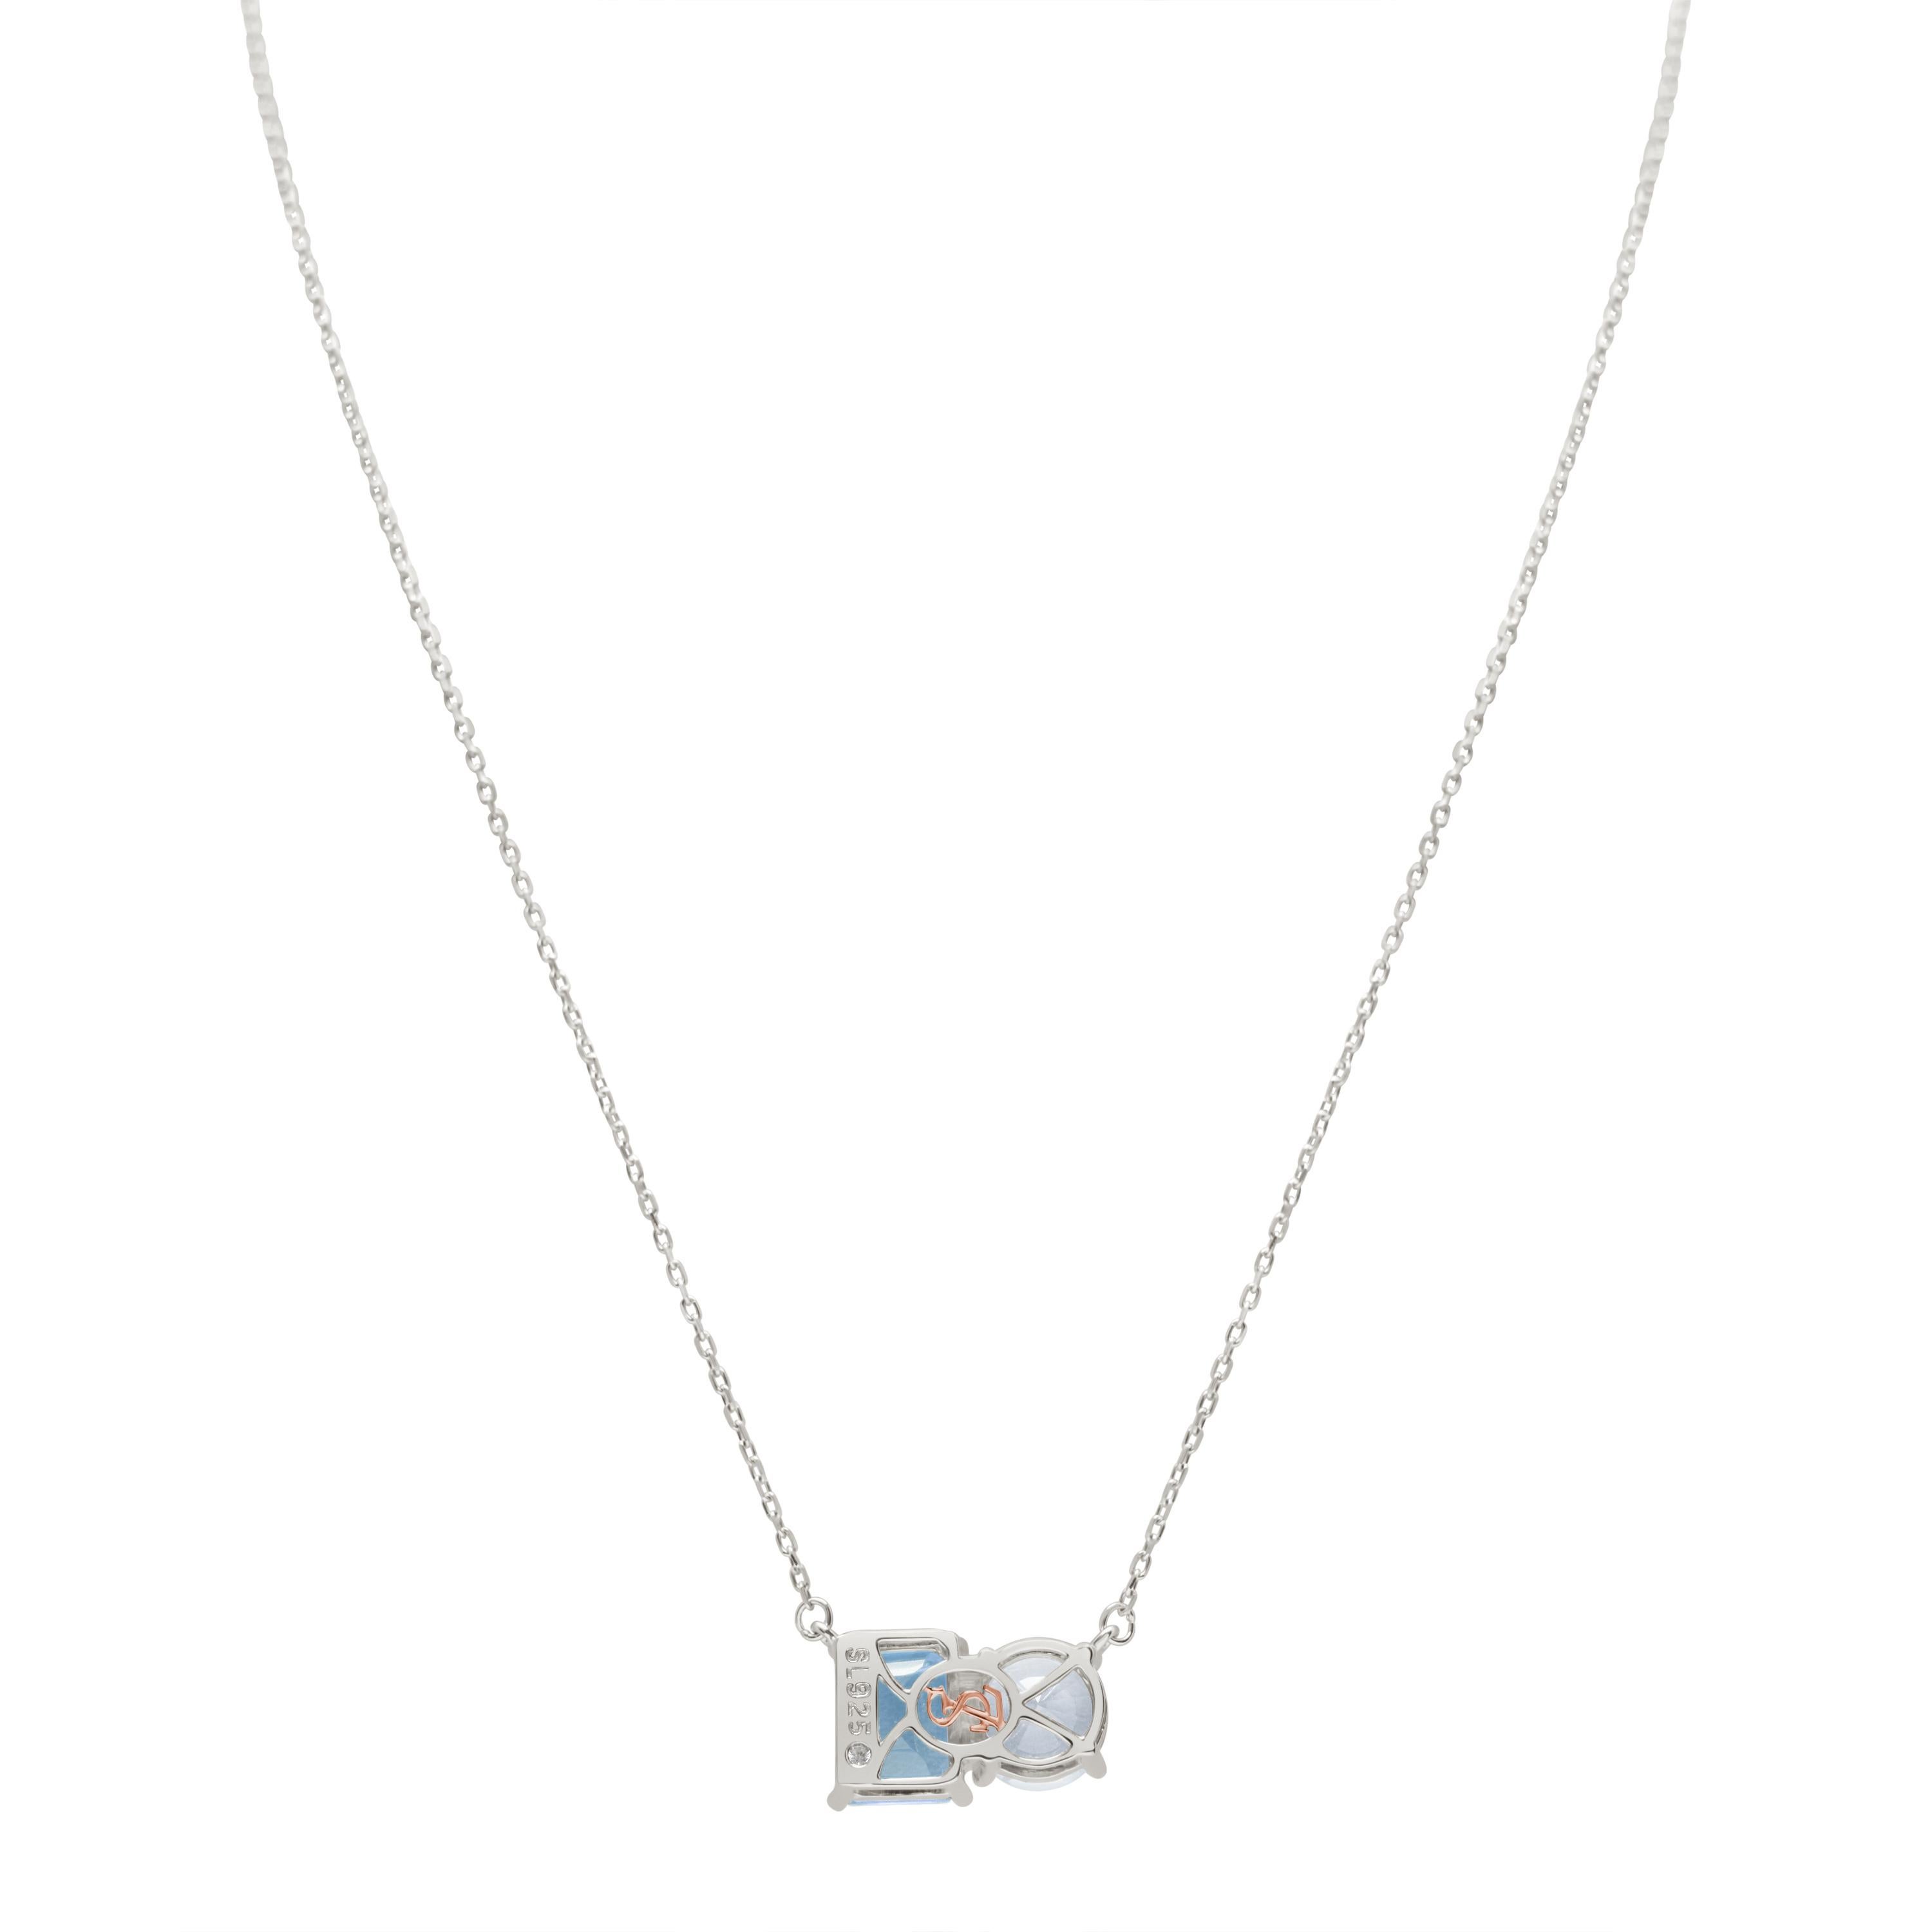 Diese in Weiß- und Blautönen schimmernde Halskette von Suzy Levian liegt voll im Trend. Ein weißer Topas im Rundschliff und ein blauer Topas im Smaragdschliff bilden ein perfekt aufeinander abgestimmtes Paar. Diese Halskette symbolisiert eine